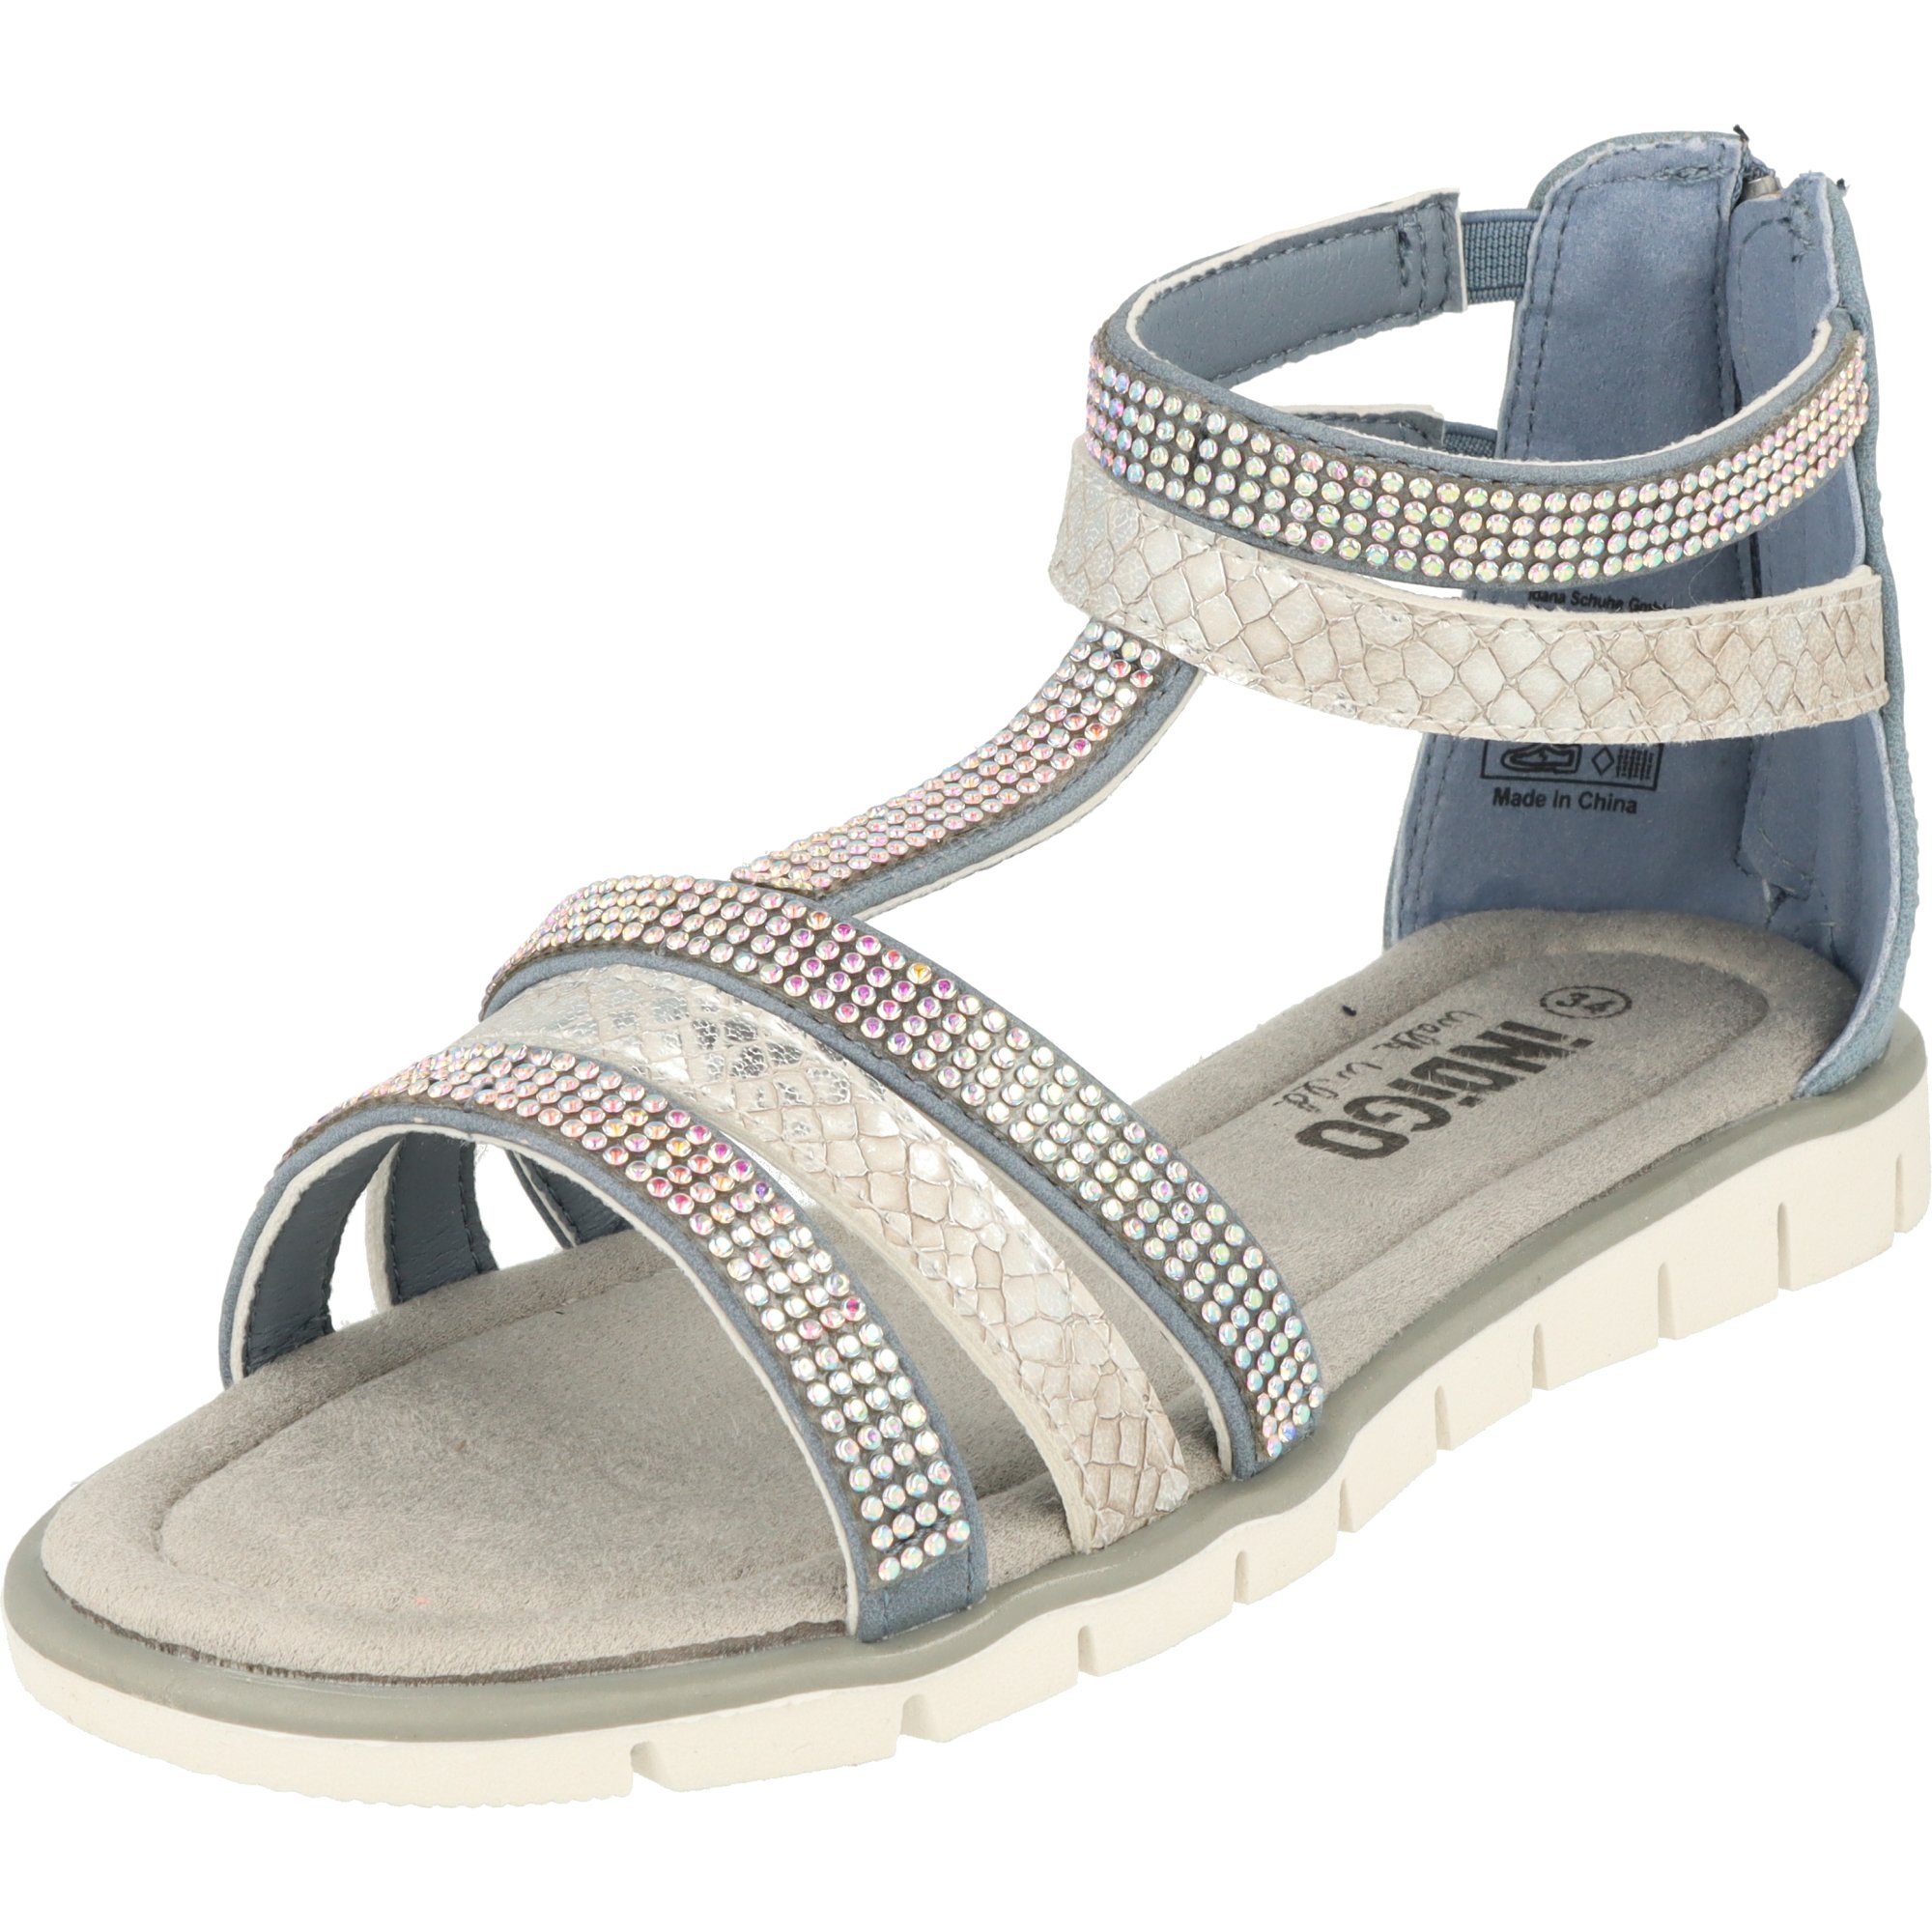 Indigo Mädchen Schuhe 482-380 Sandale mit Glitzersteinen Sommer Blue Römersandale